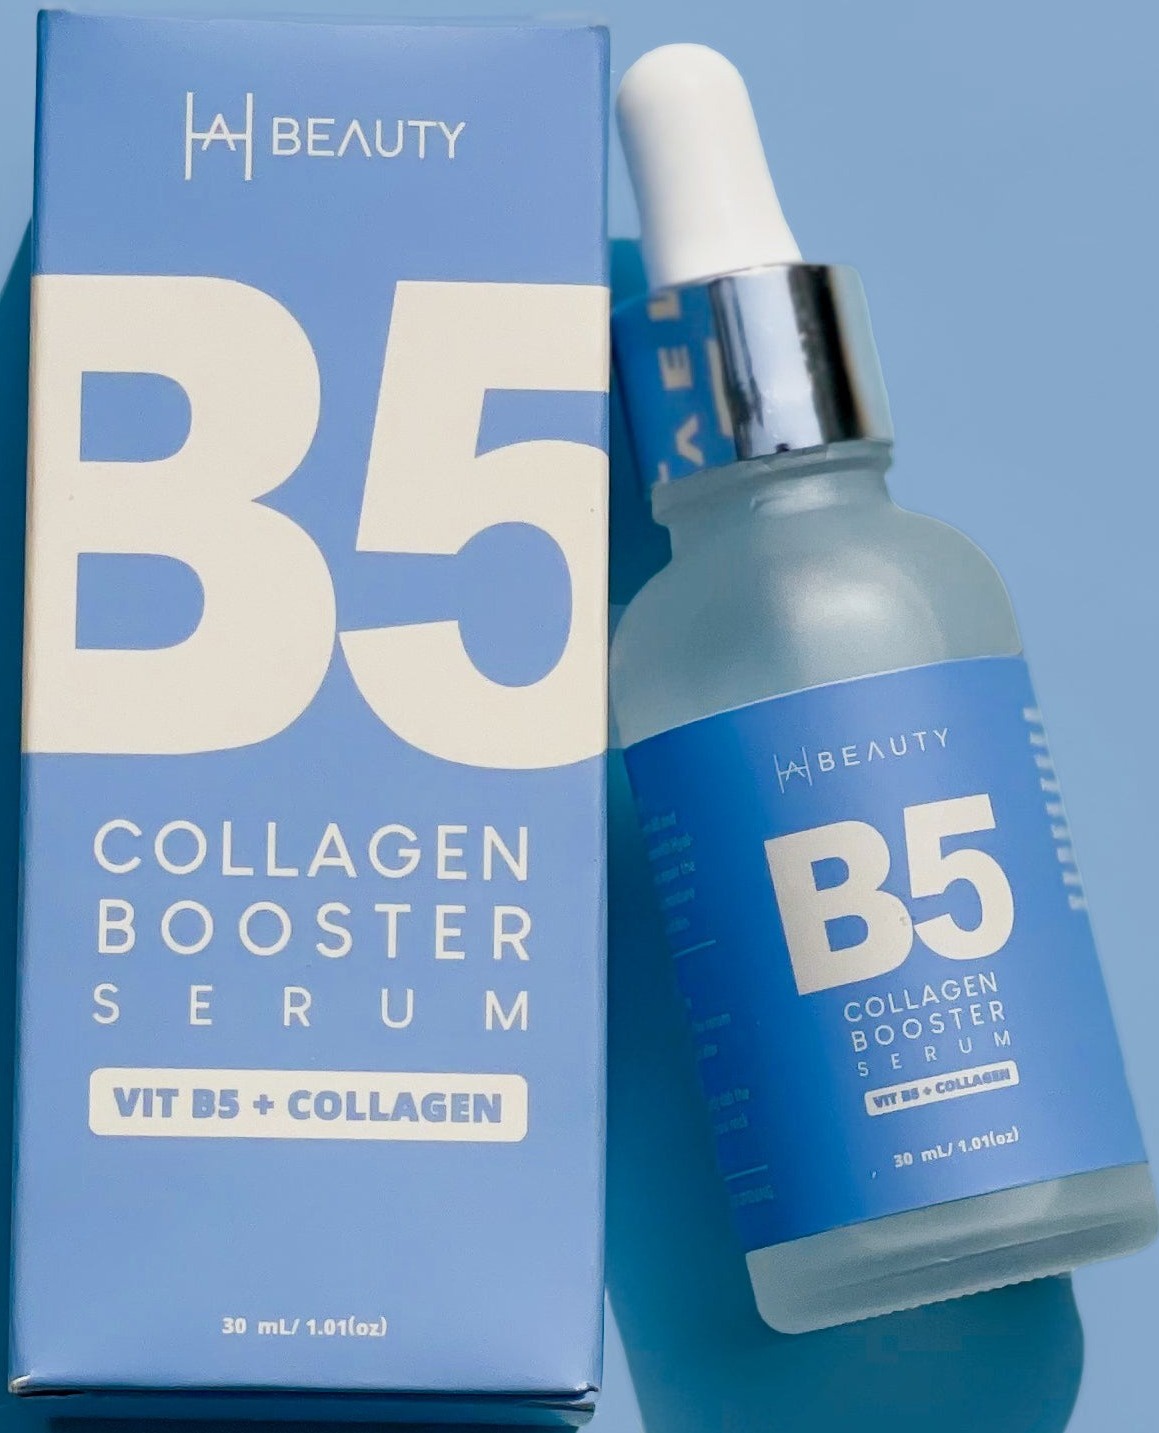 Hira ali beauty Collagen + Ha - B5 Collagen Booster Serum